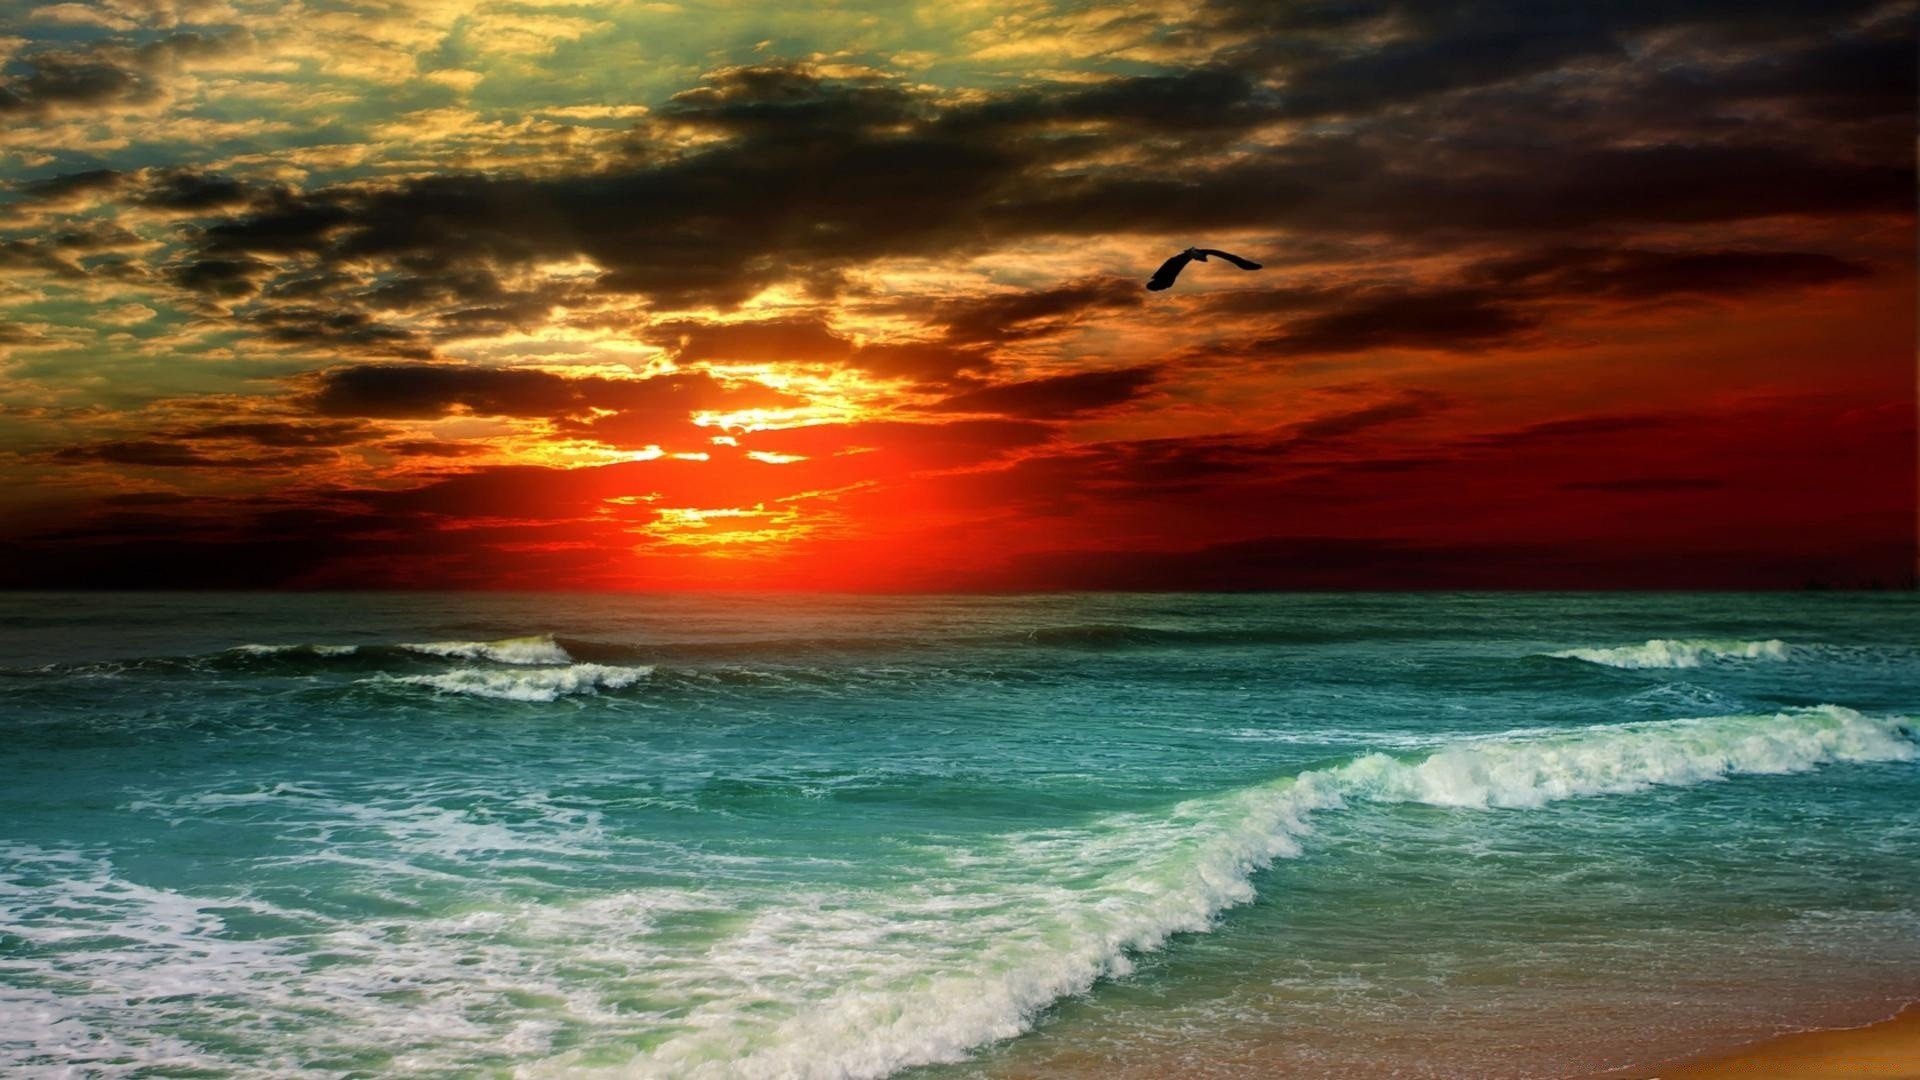 острова воды прибой пляж океан море закат солнце пейзаж лето тропический путешествия моря небо песок волна хорошую погоду рассвет